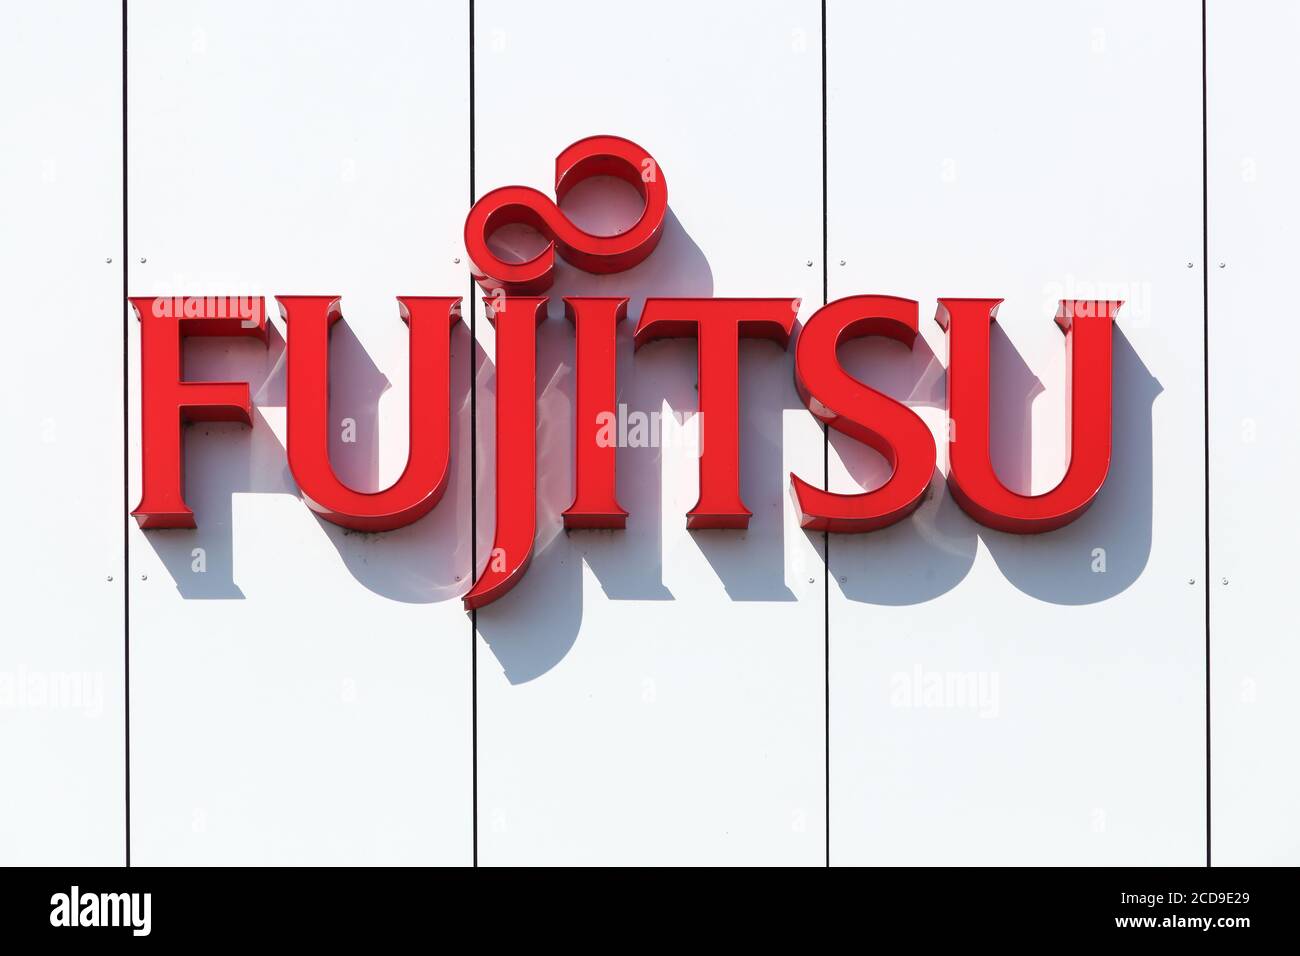 Aarhus, Danemark - 22 août 2015 : logo Fujitsu sur un mur. Fujitsu est une société multinationale japonaise d'équipements et de services informatiques Banque D'Images